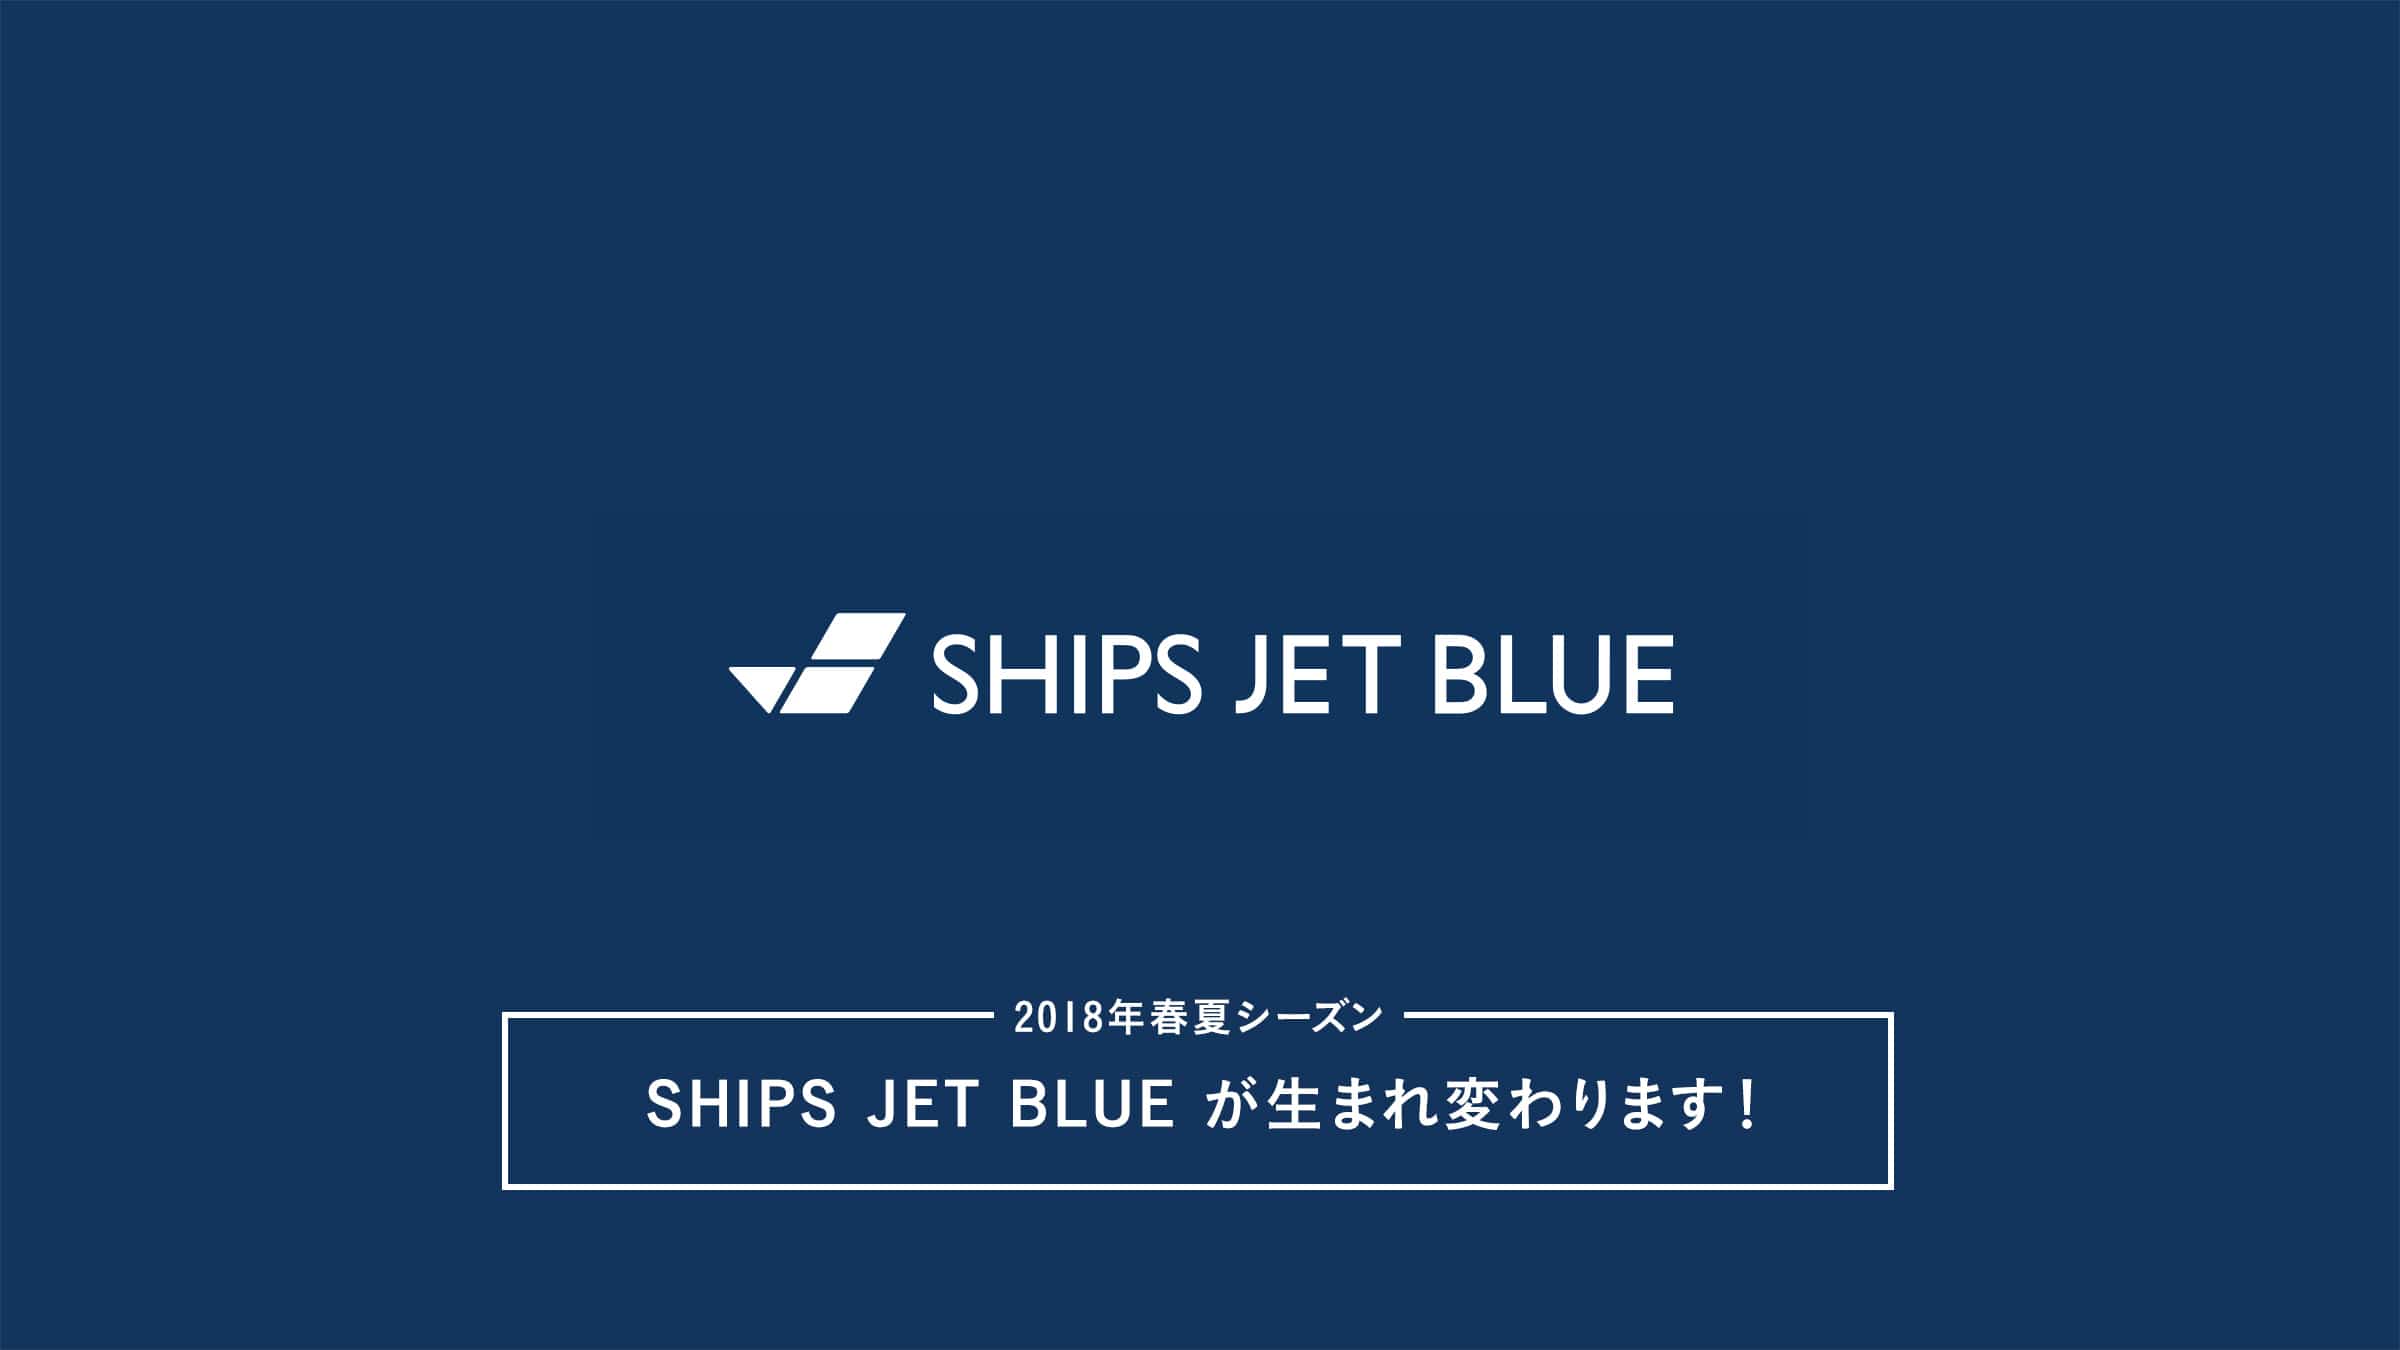 SHIP JET BLUE